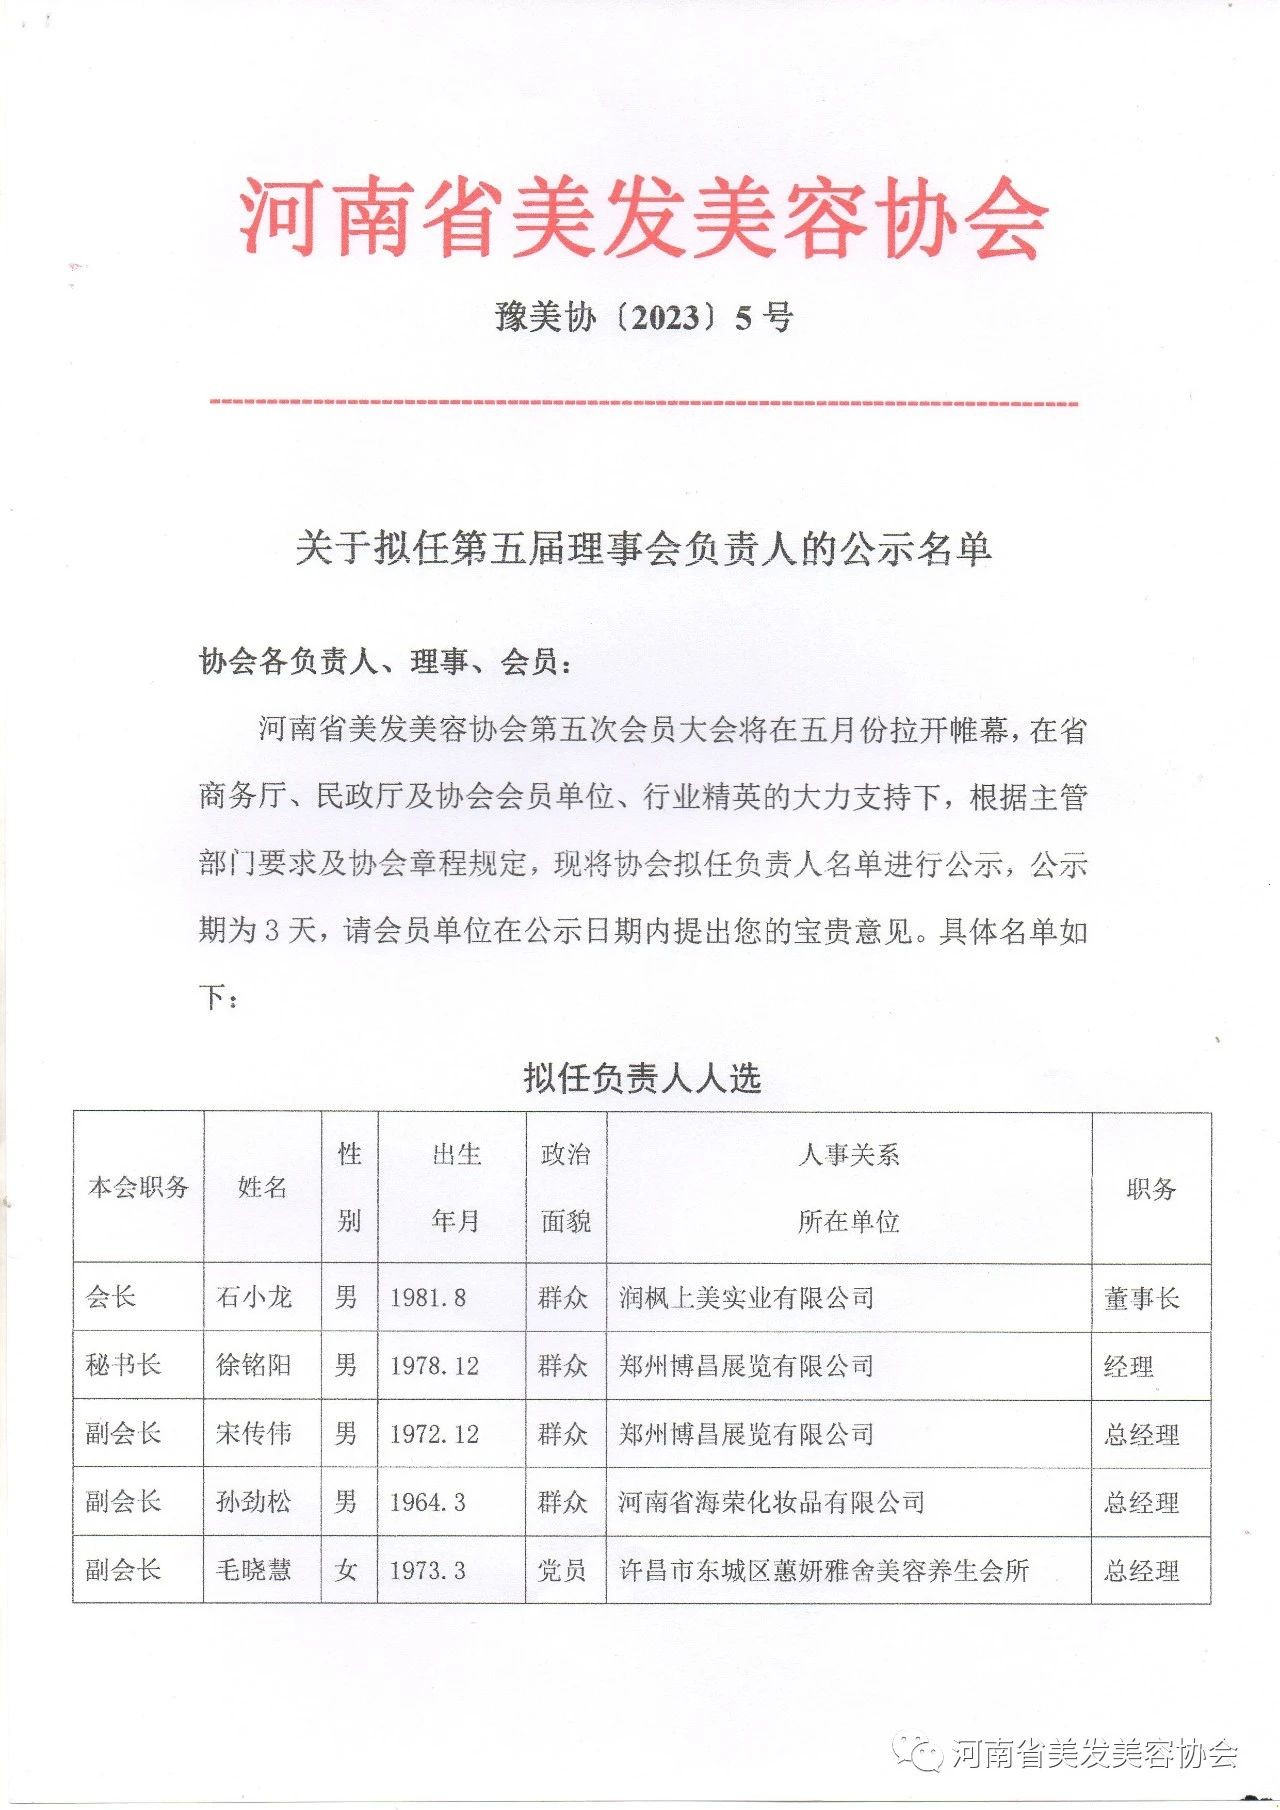 河南省美发美容协会第五届理事会拟任负责人名单公示名单及拟任会长简介